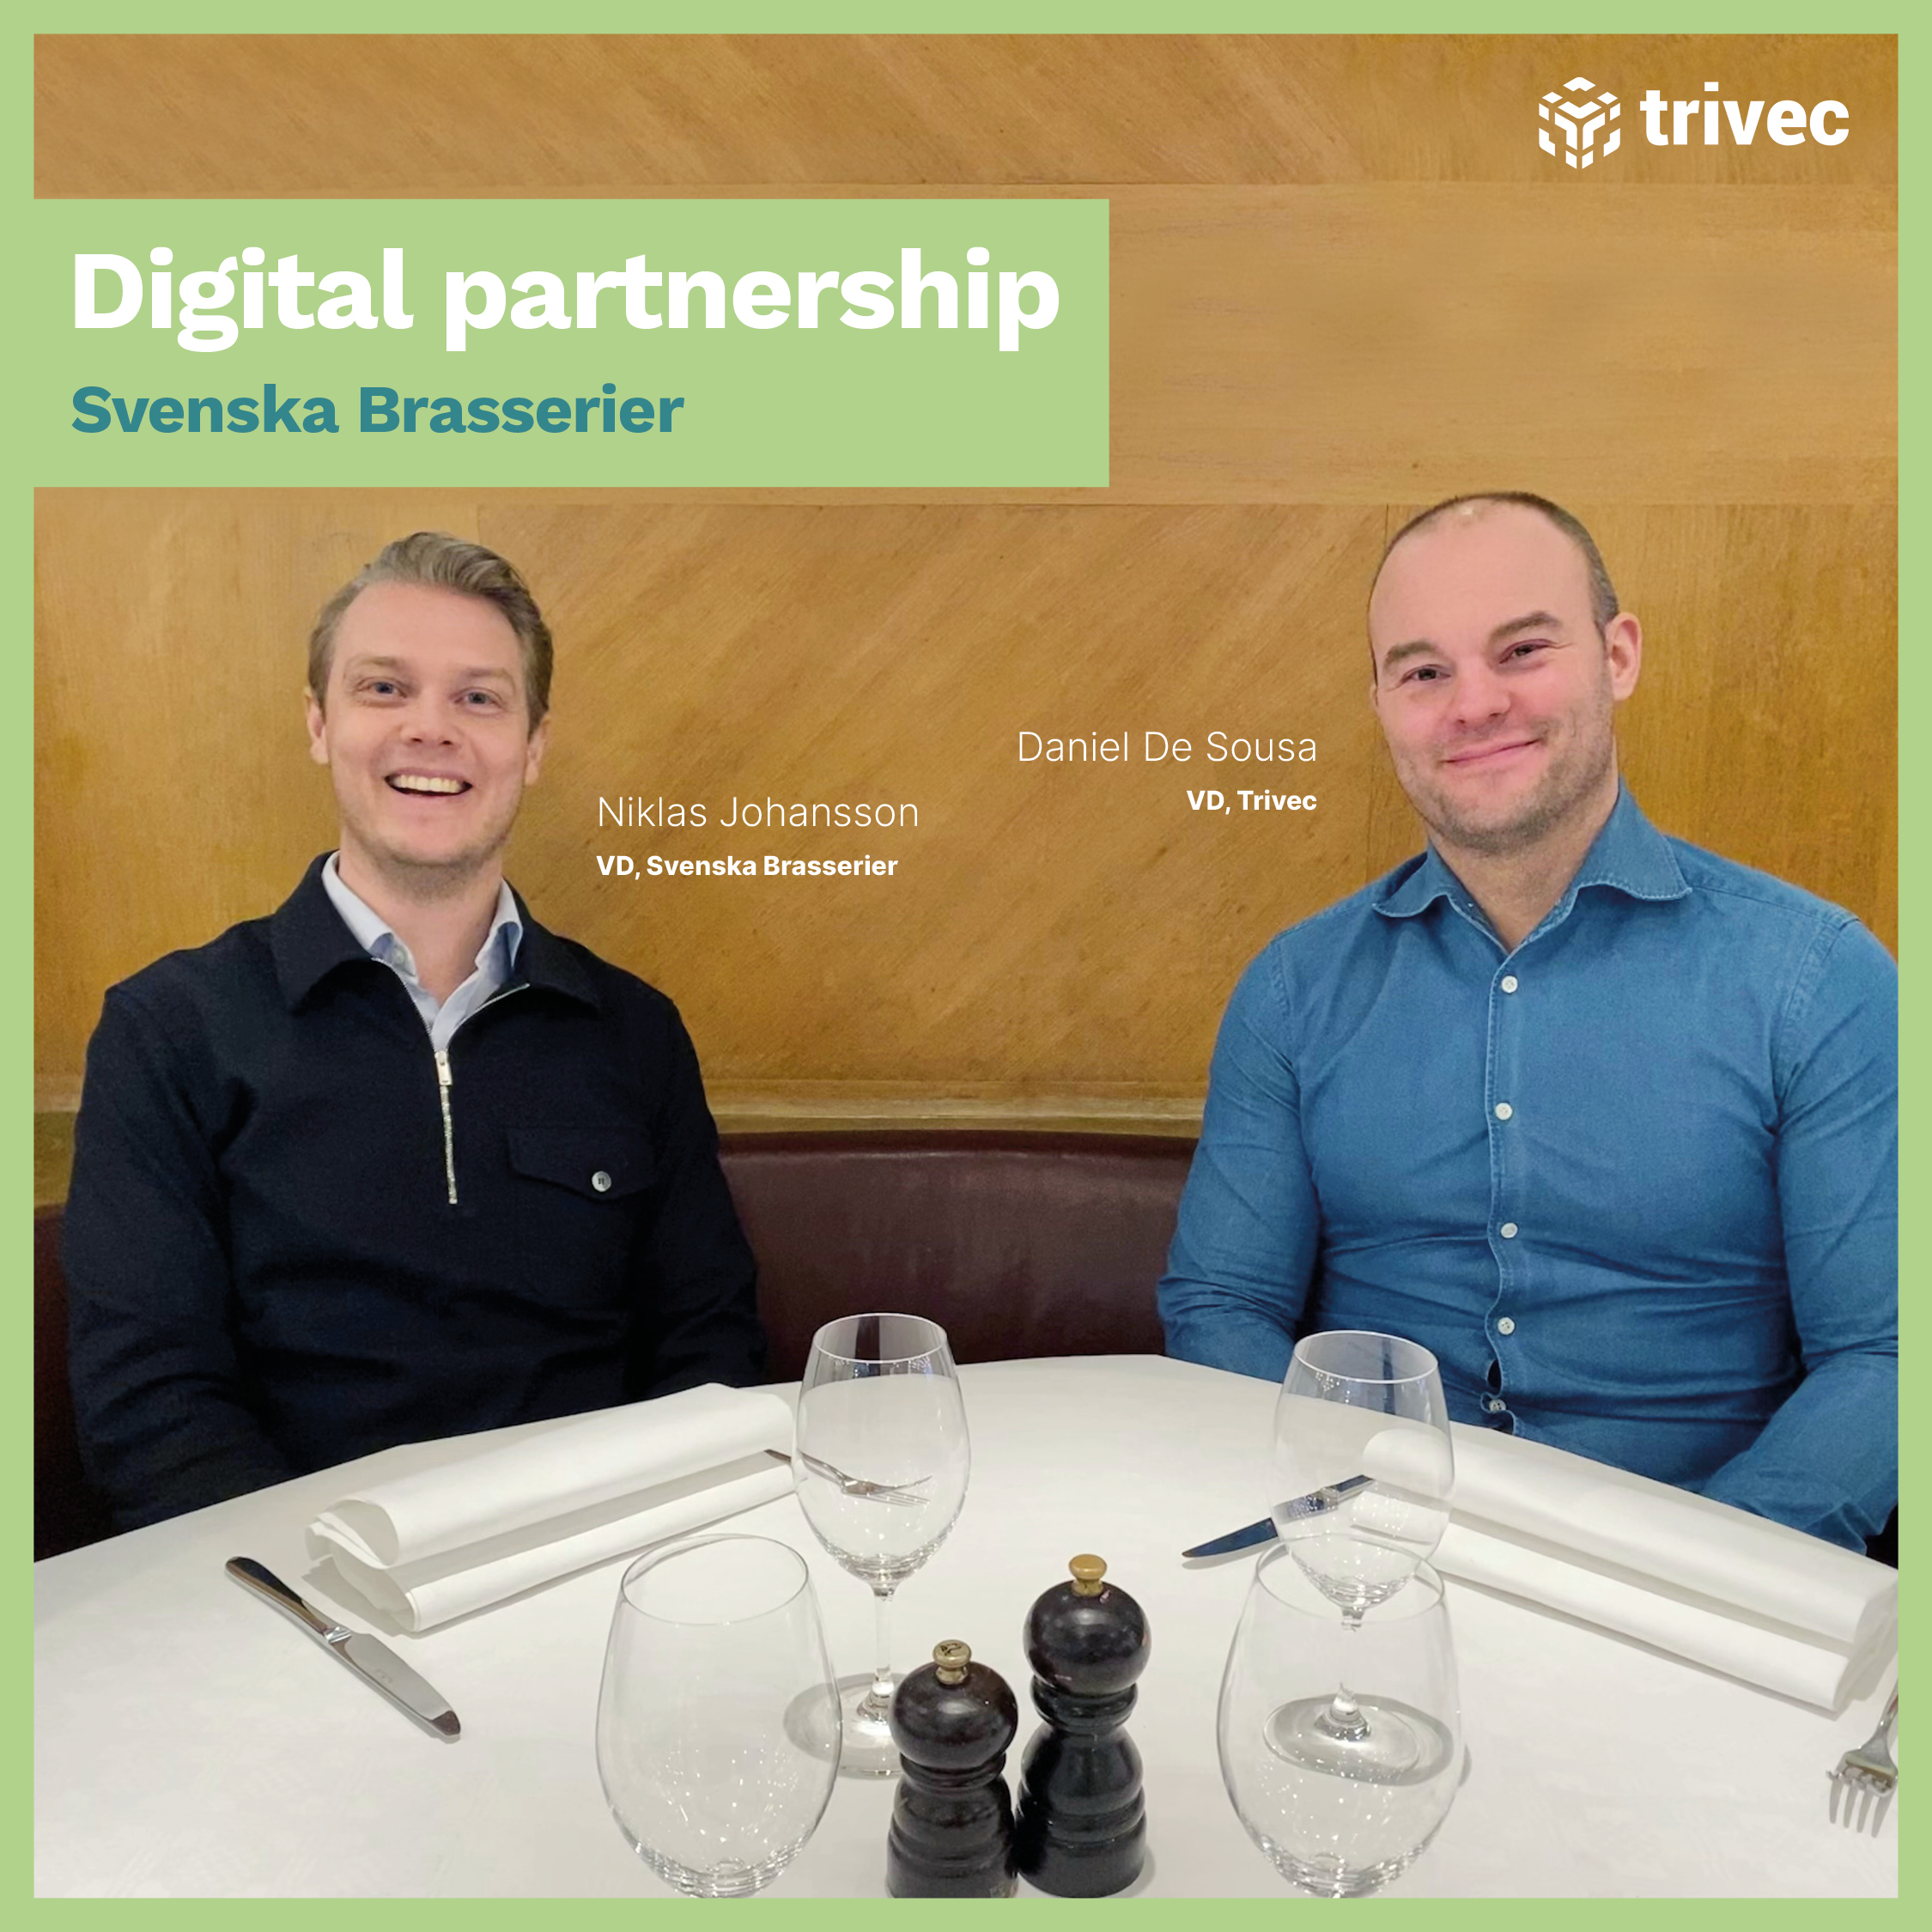 Trivec and Svenska Brasserier digital partnership